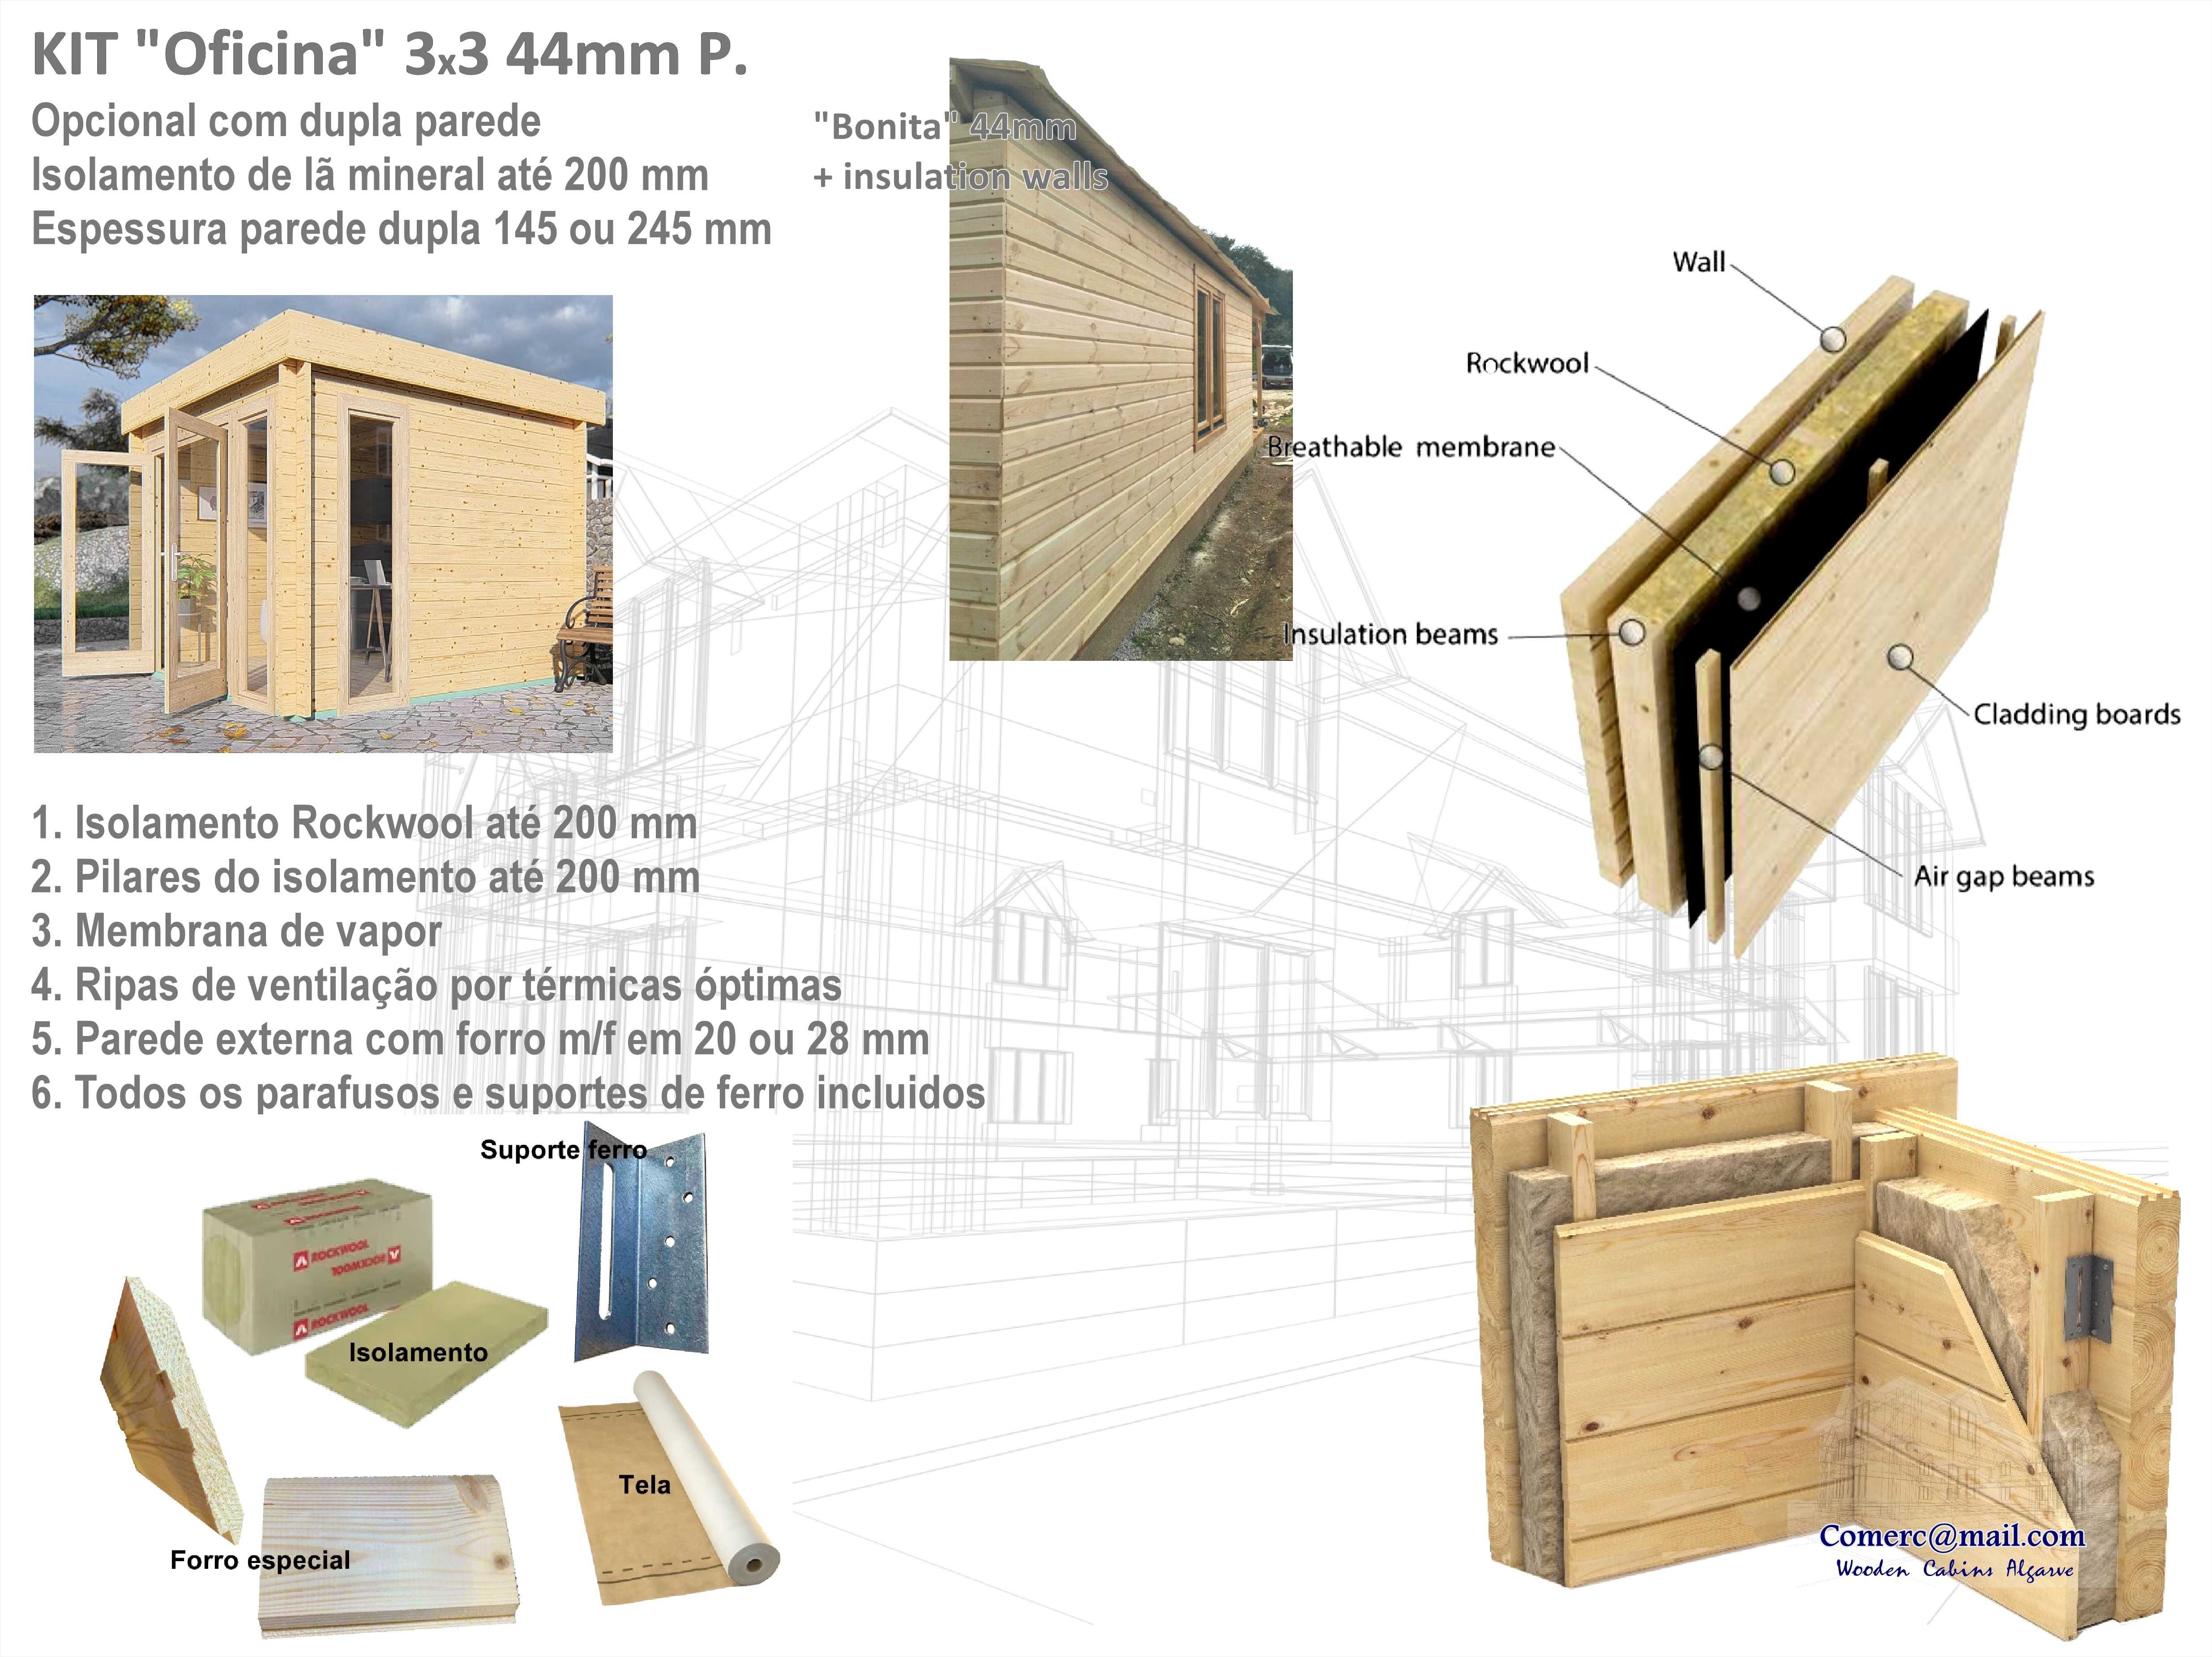 KIT casa madeira "Oficina" 44 área coberta 9.9m²..   ;-)